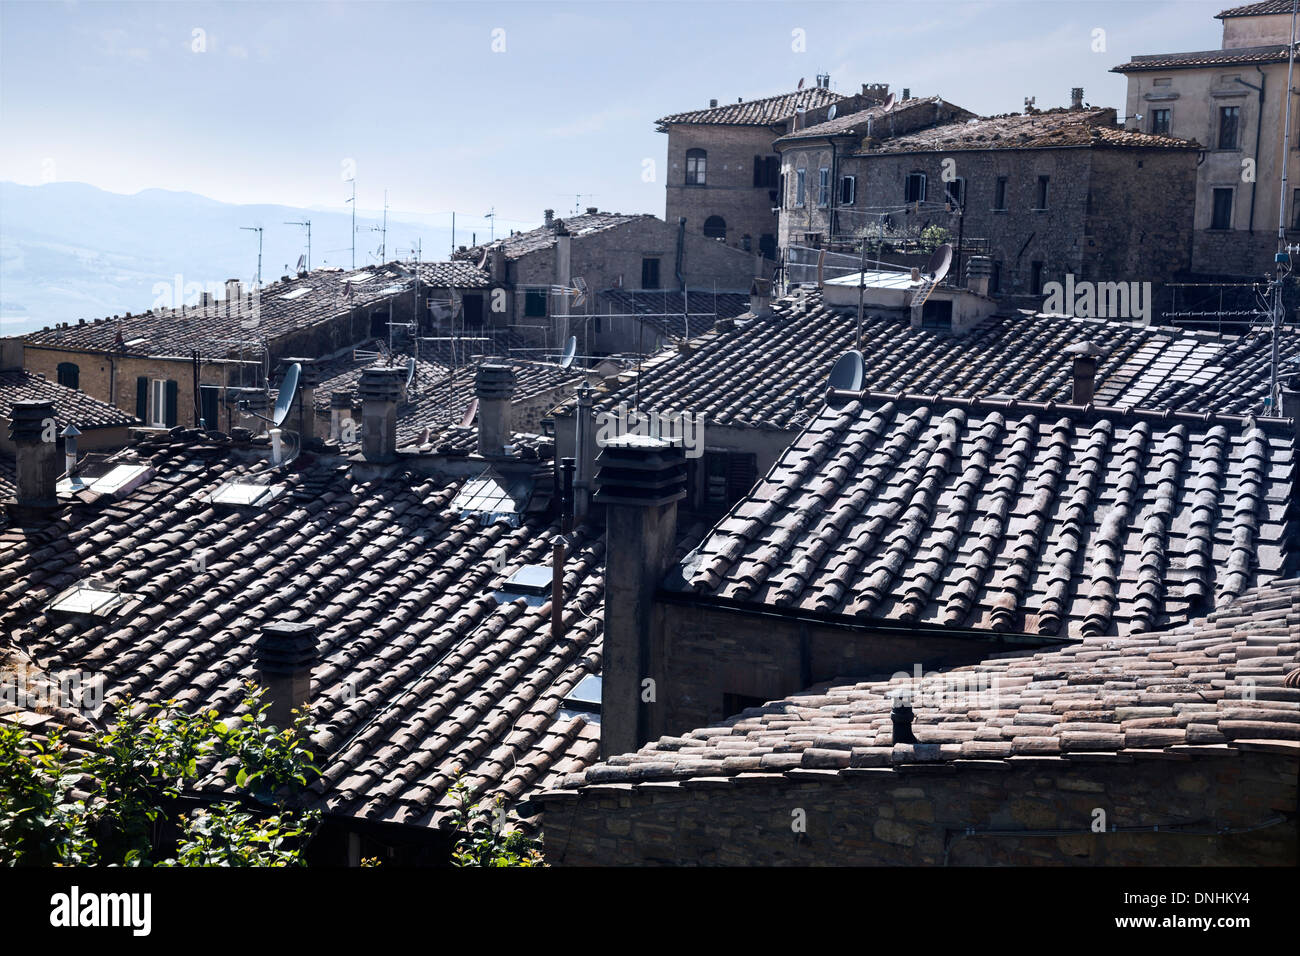 Angolo di alta vista di case in una città vecchia, Volterra, in provincia di Pisa, Toscana, Italia Foto Stock